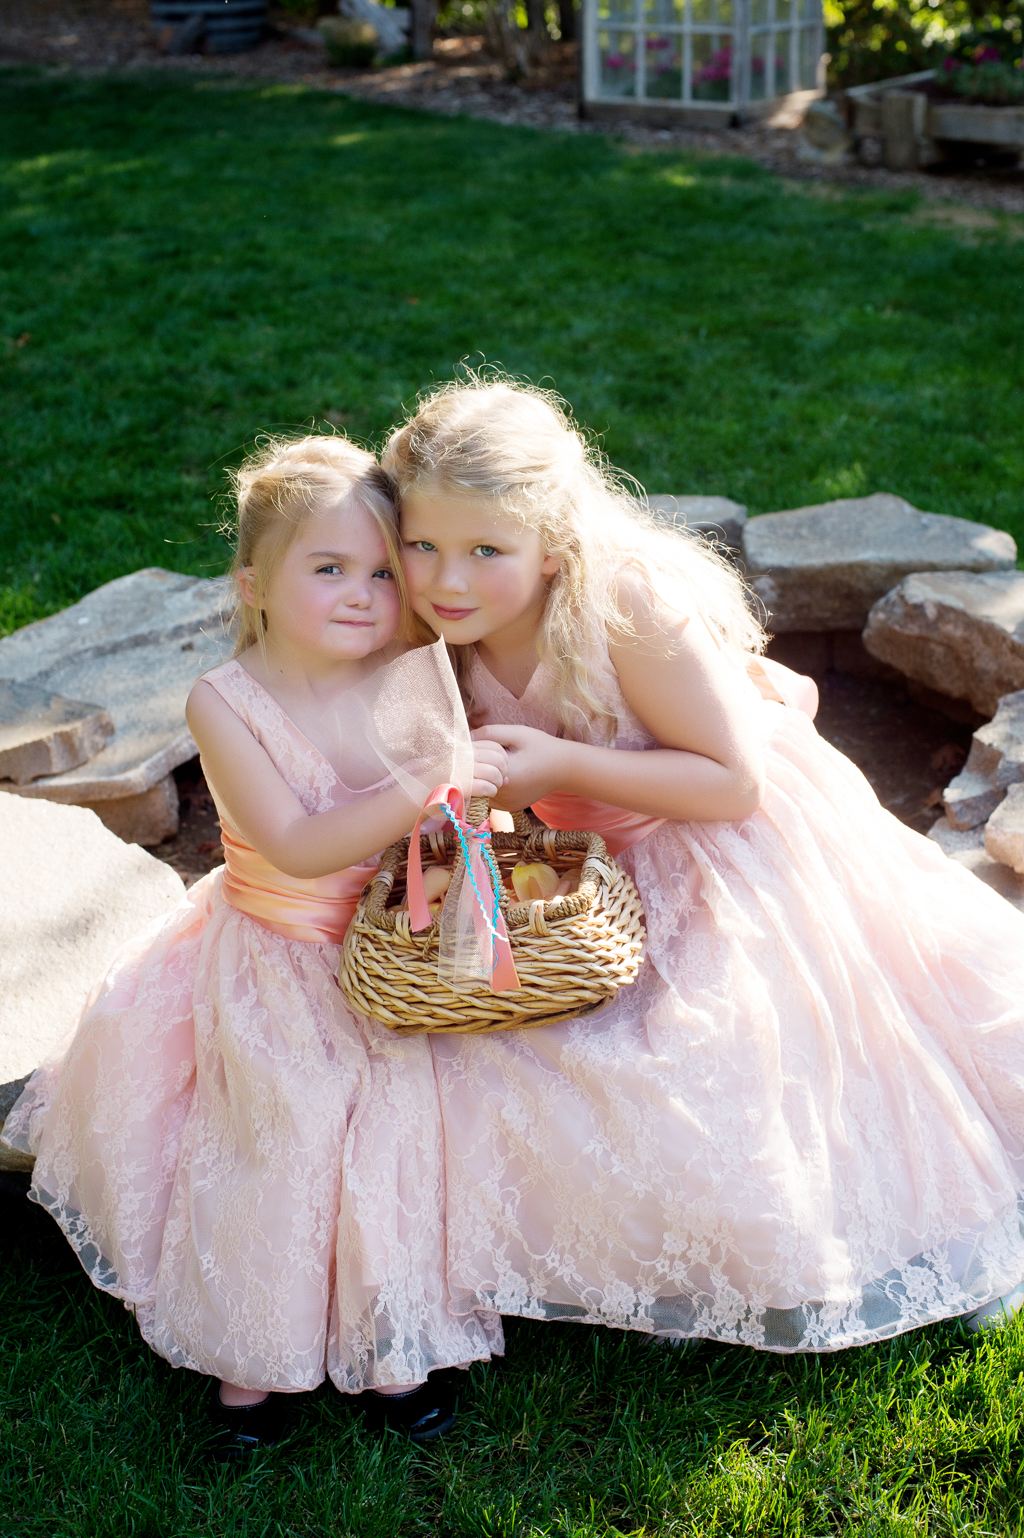 flower girls in pink dresses hold a basket and hug together